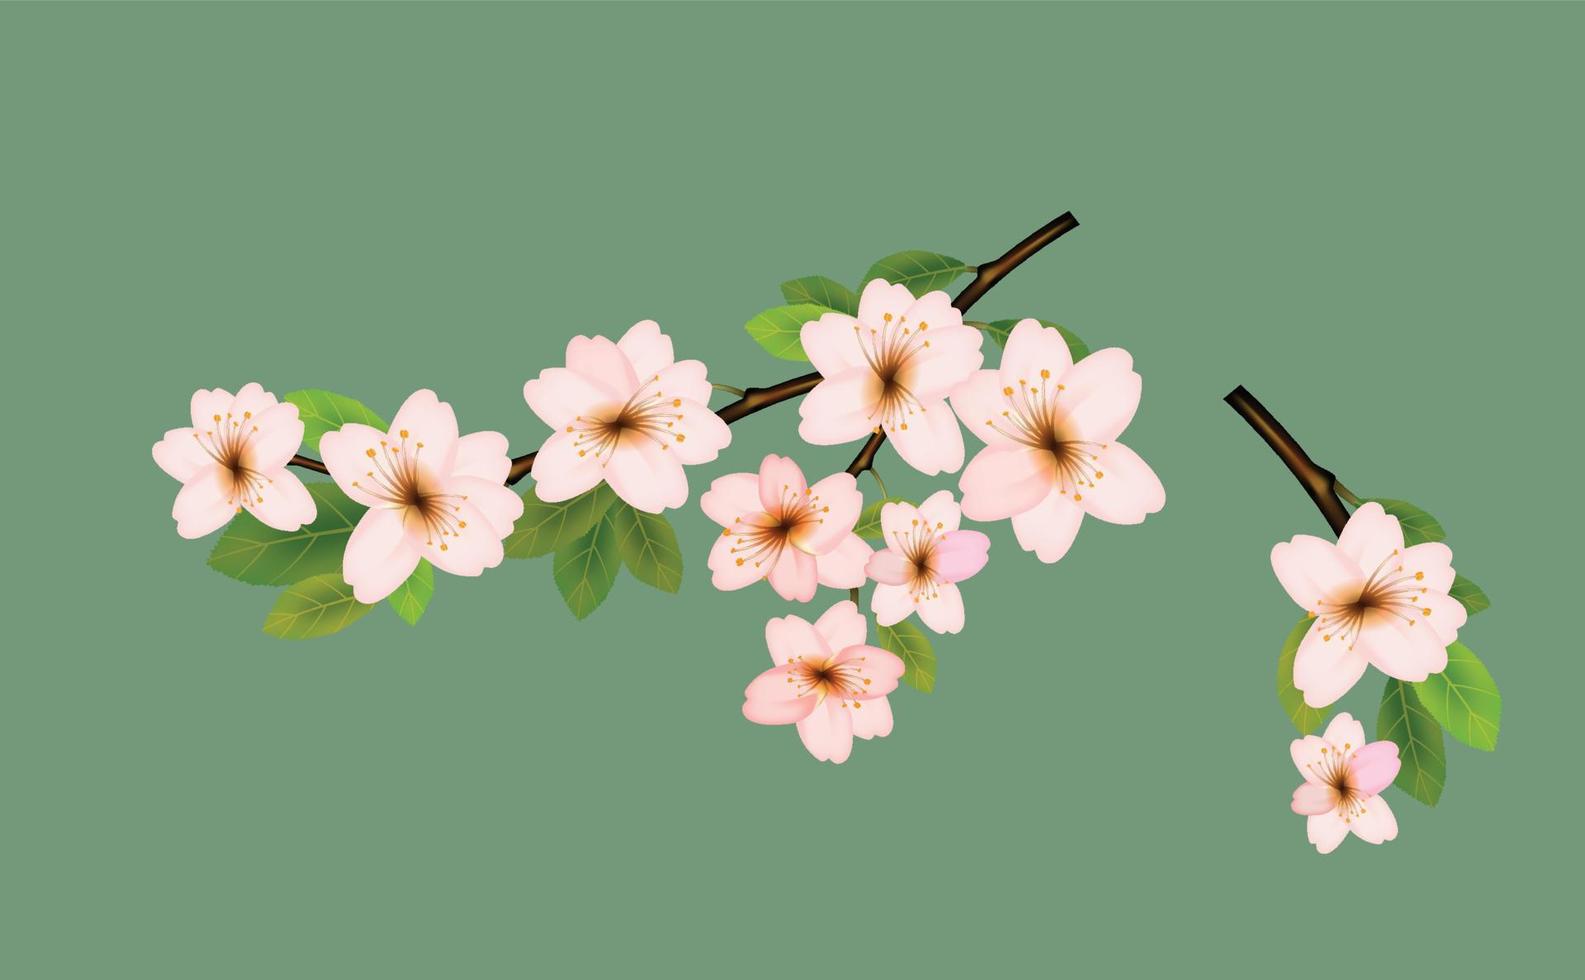 realistisch sakura Japan kers tak, roze sakura bloem achtergrond. waterverf kers. vector illustratie.